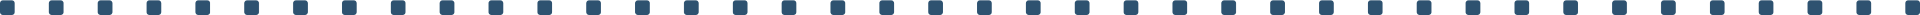 Linie-Logo-Trenner